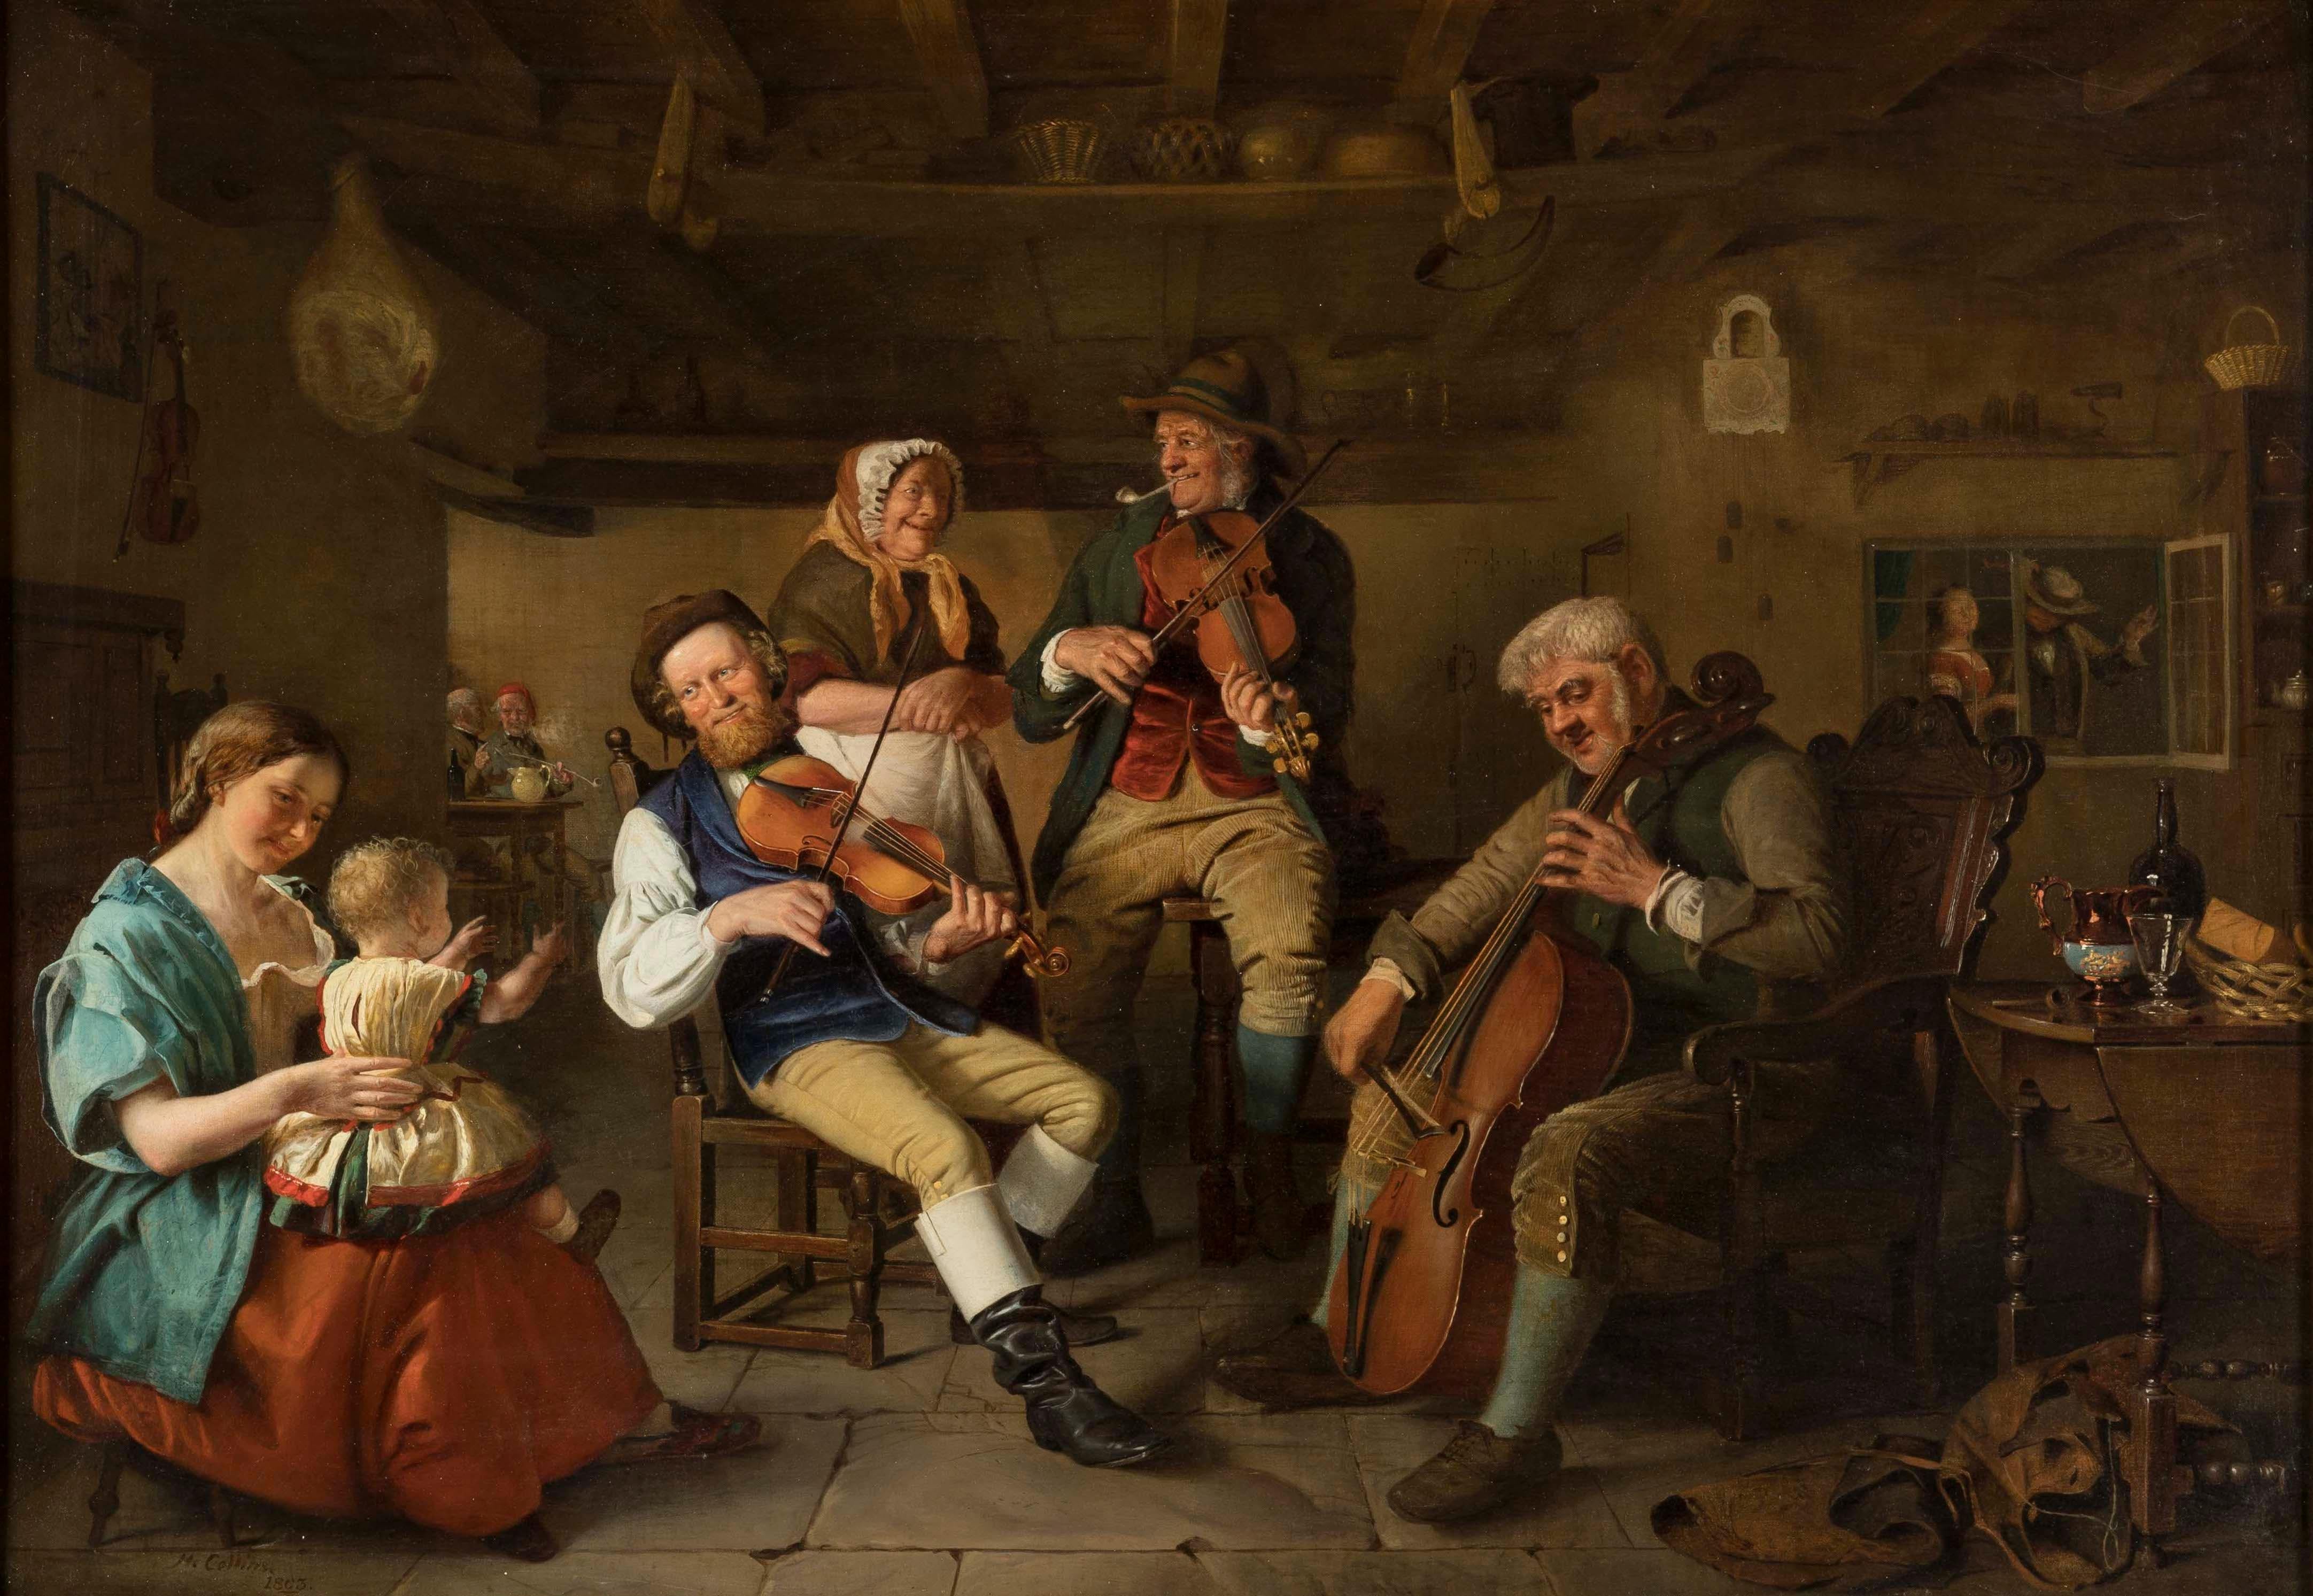 Ein musikalisches Unternehmen
Von Hugh Collins (ca. 1834-1896)

Die in Öl auf Leinwand gemalte Tavernenszene zeigt ein Trio von Musikern umgeben von faszinierten Zuschauern. Vom Künstler signiert 